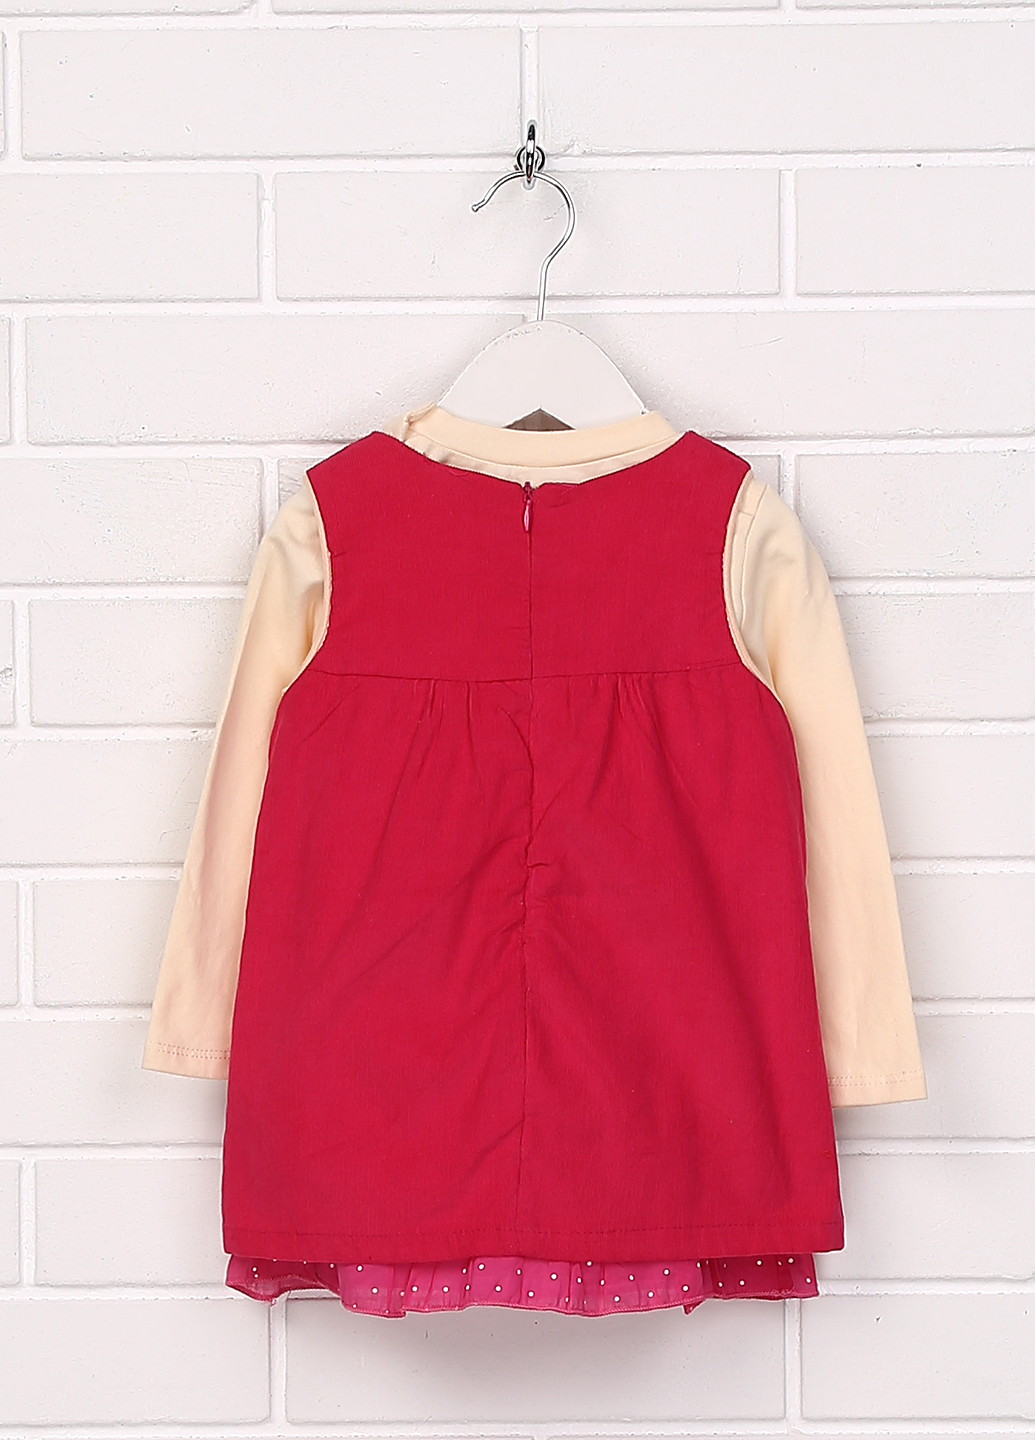 Красный демисезонный комплект (платье, лонгслив) Ativo